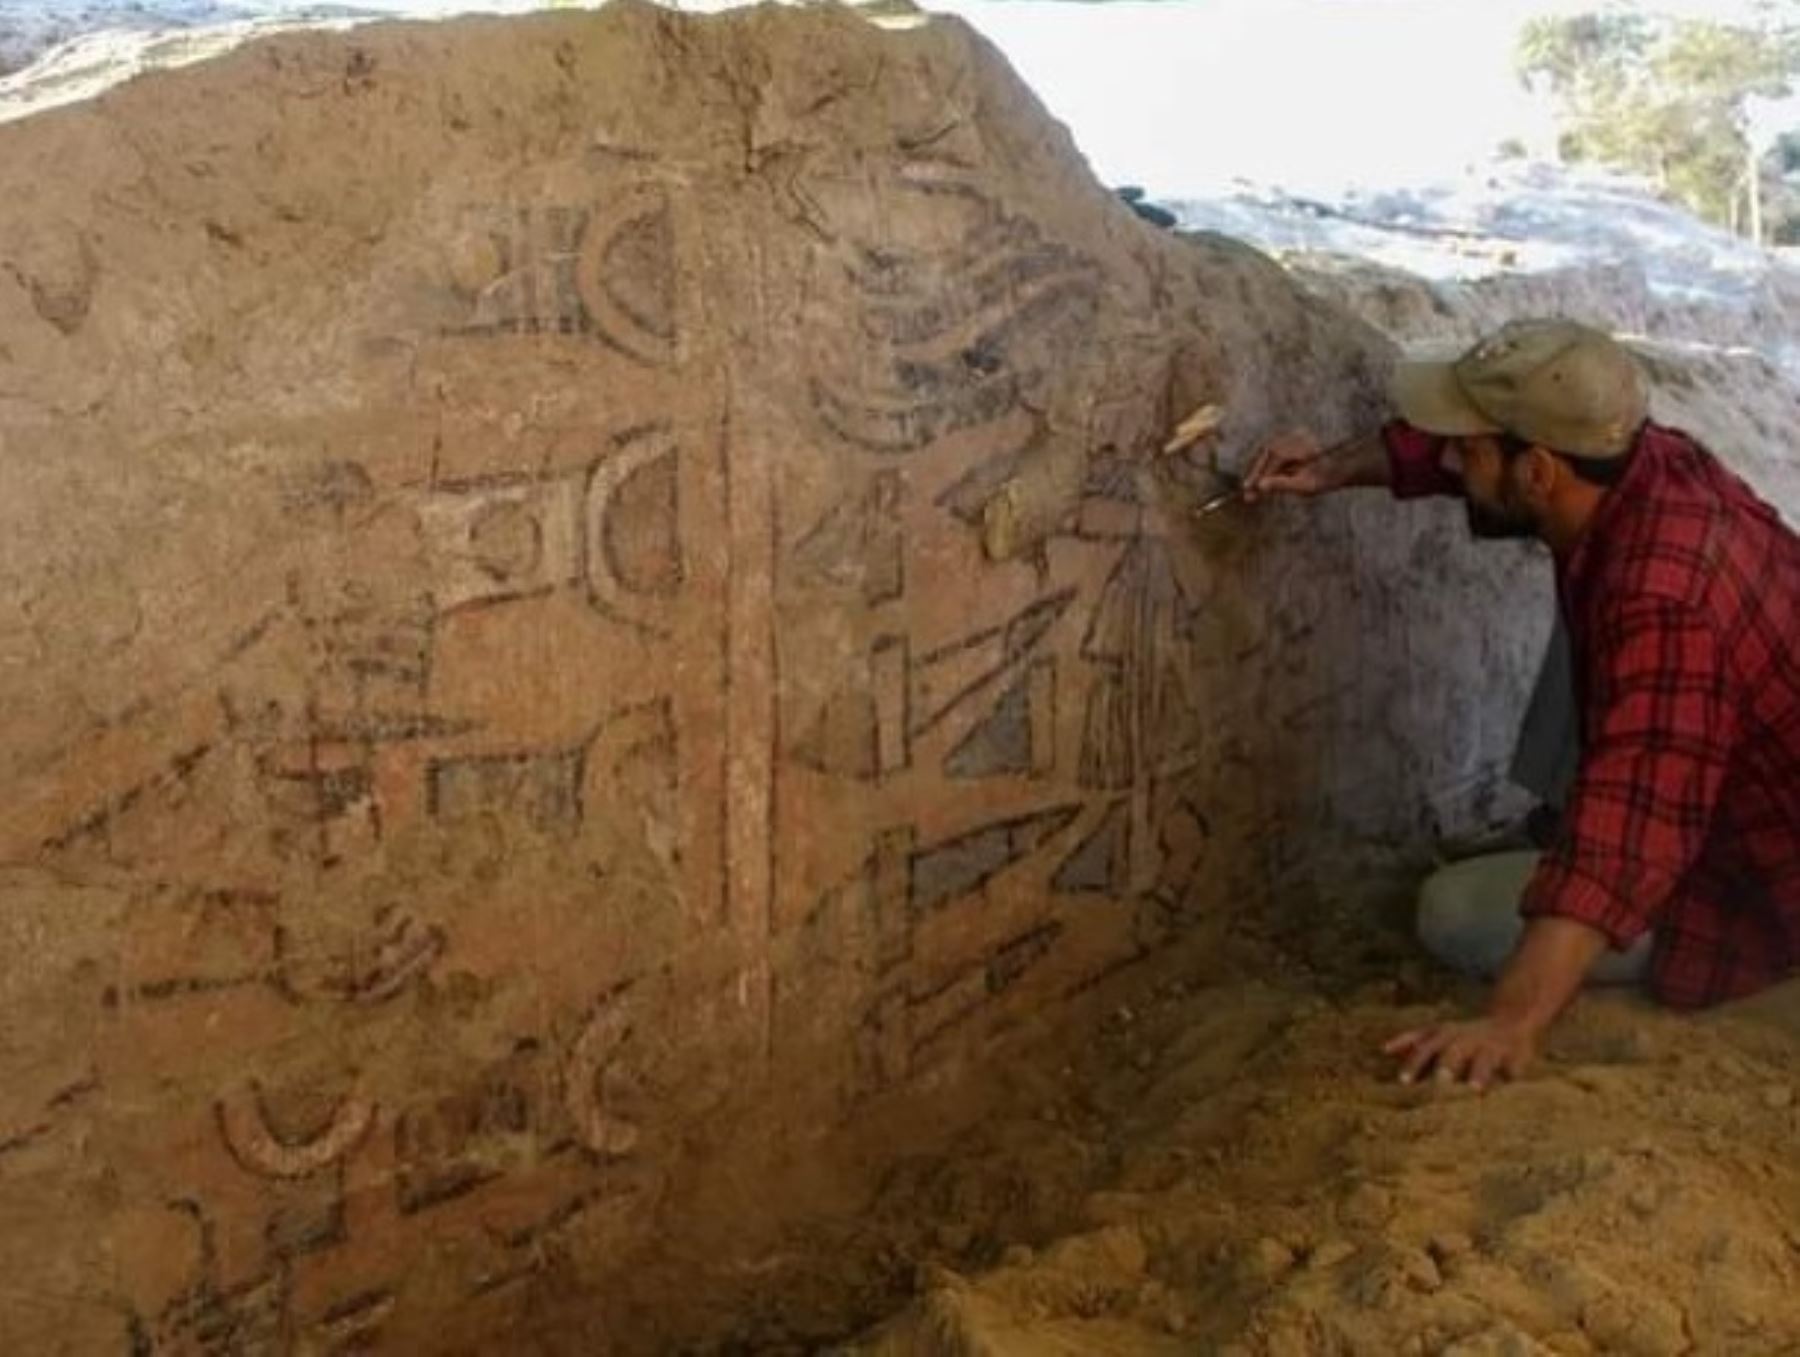 Un equipo de arqueólogos, conformado por investigadores suizos y peruanos, redescubrieron una pintura mural de origen prehispánico en la Huaca Pintada, ubicada en el distrito de Íllimo, en Lambayeque. Foto: Sam Ghavami